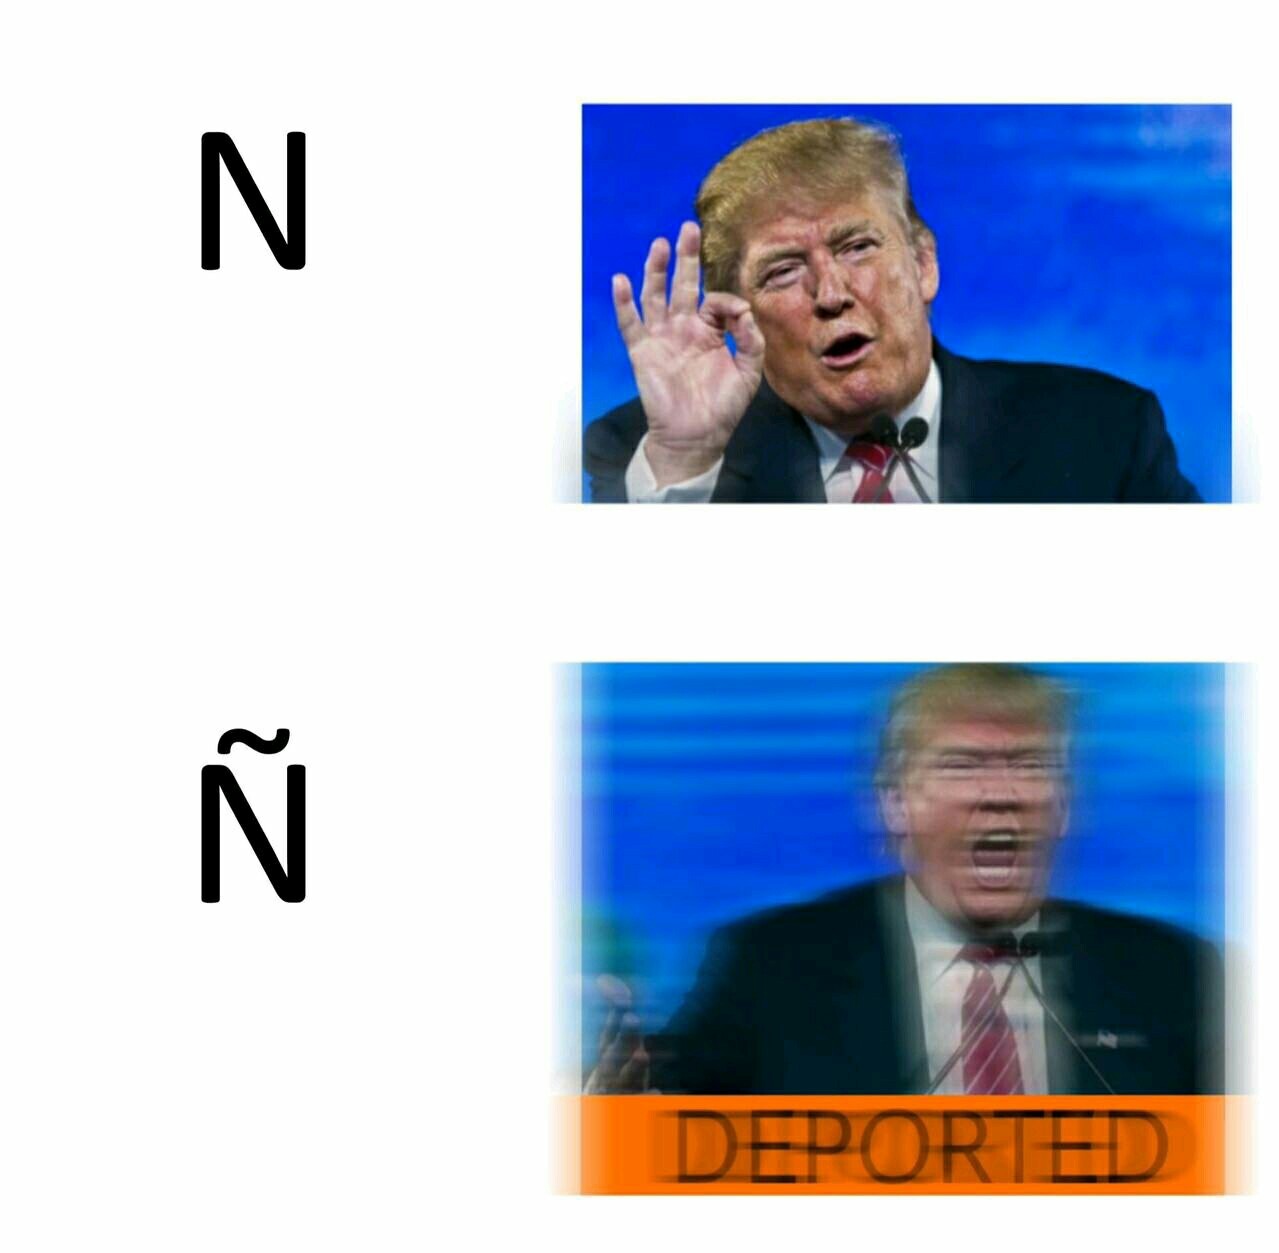 Deported - meme